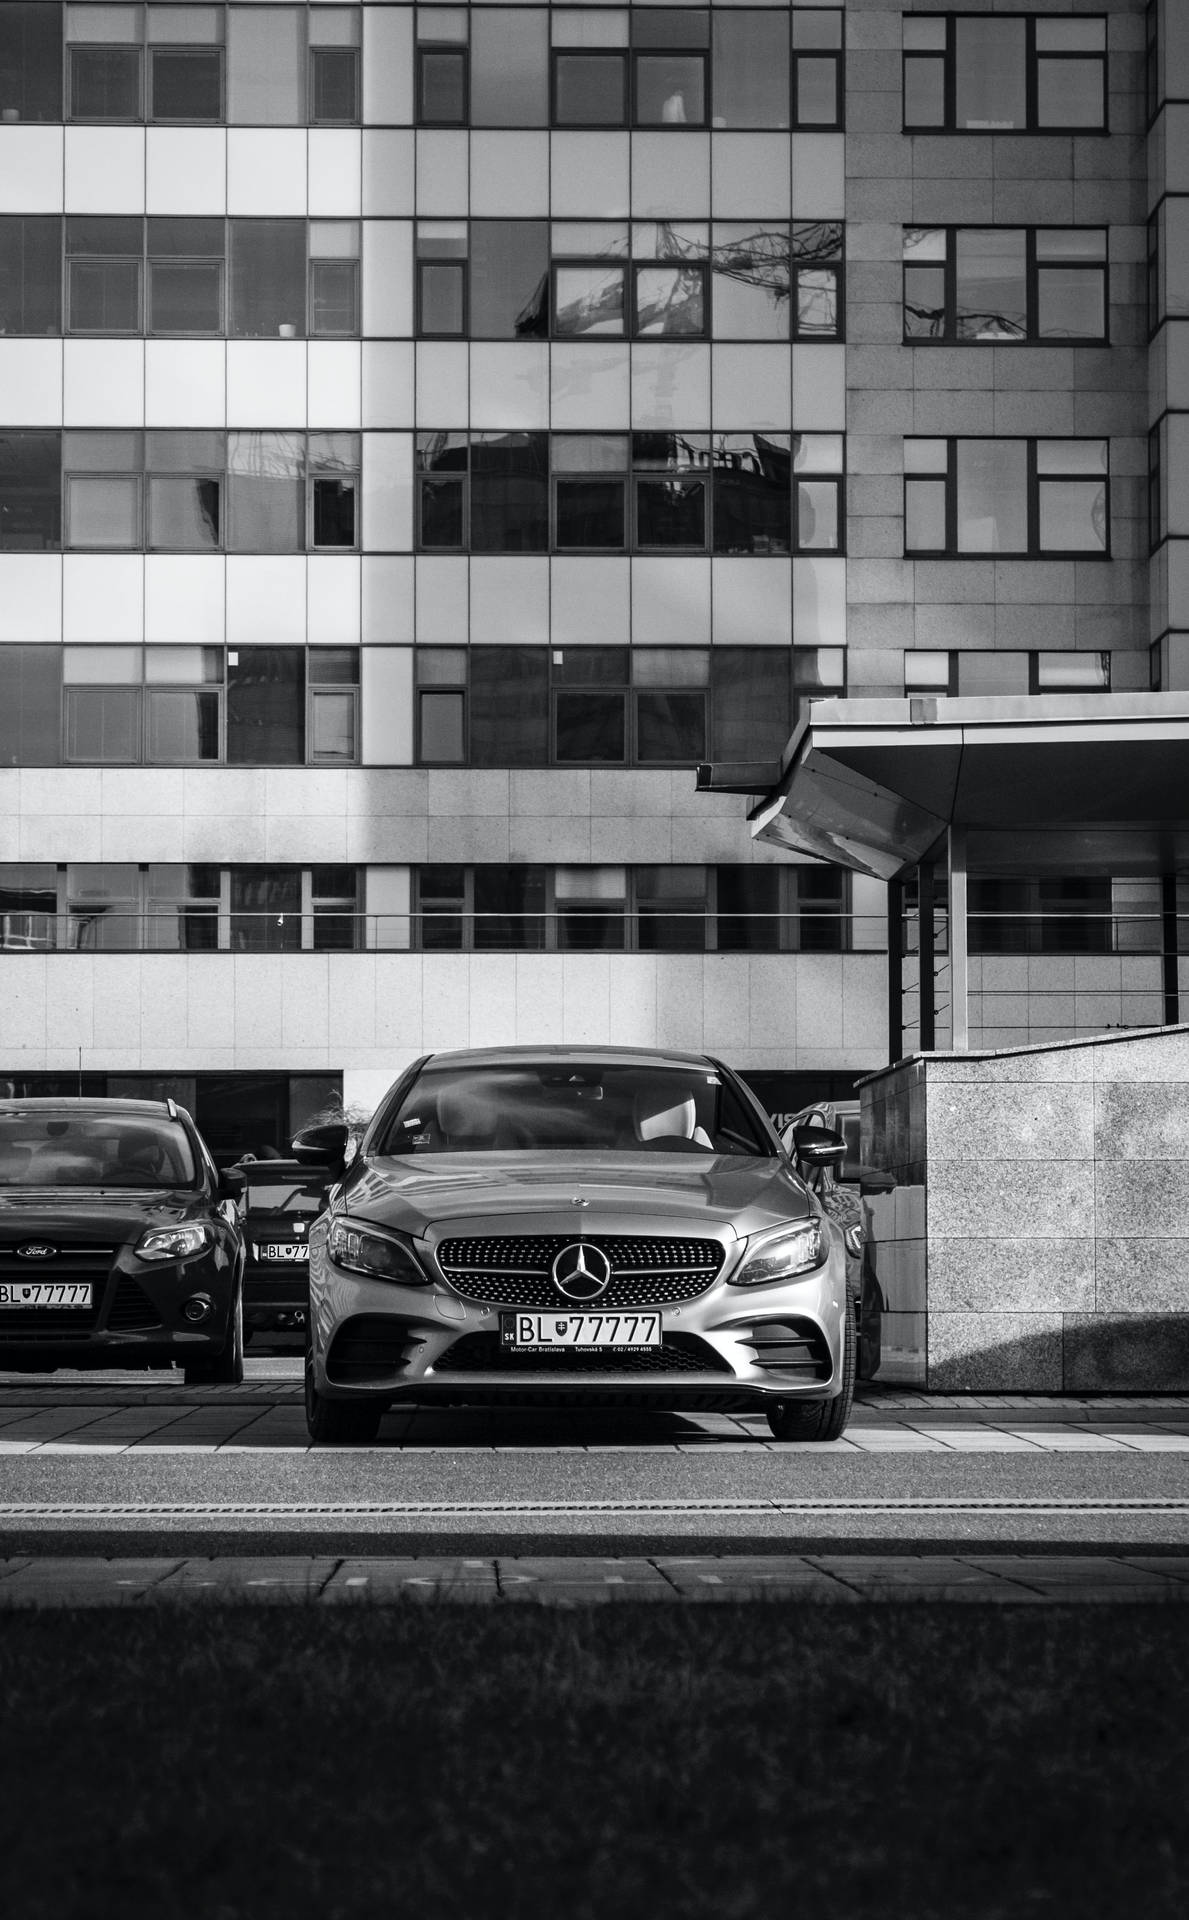 Parked Mercedes Benz E Class